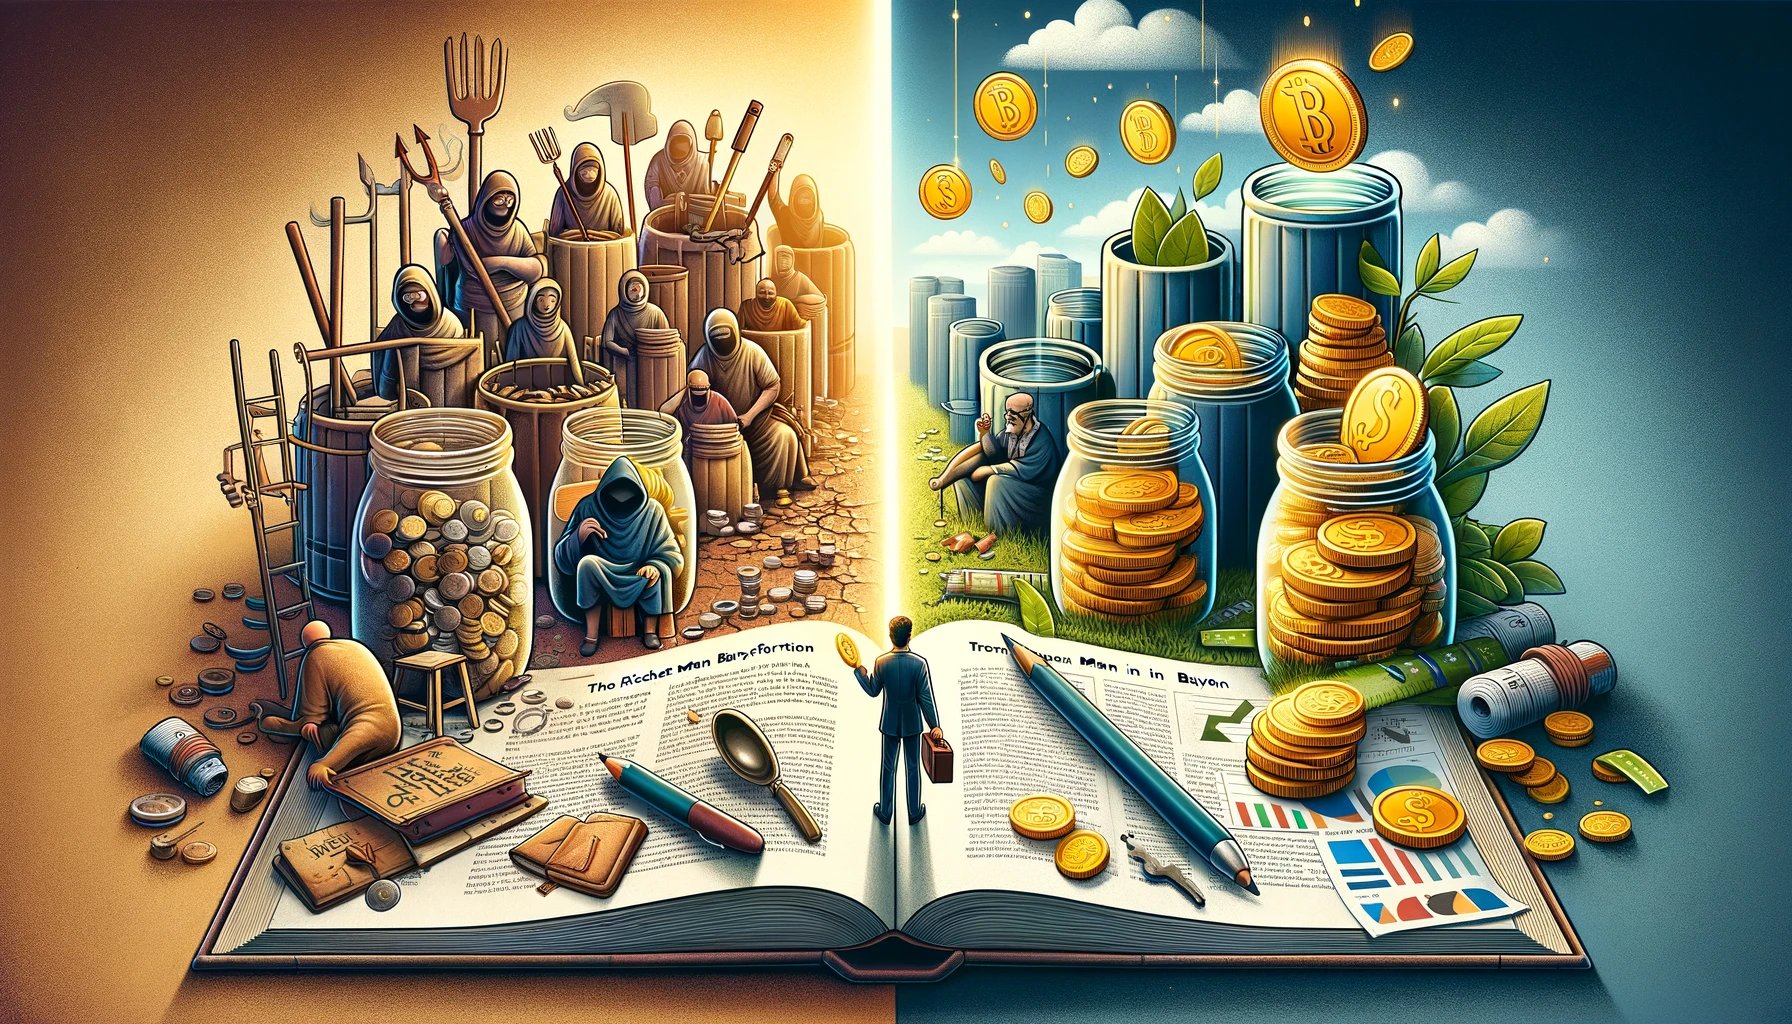 Transformação de desafios financeiros em prosperidade, com um livro aberto simbolizando a ponte entre os dois mundos.